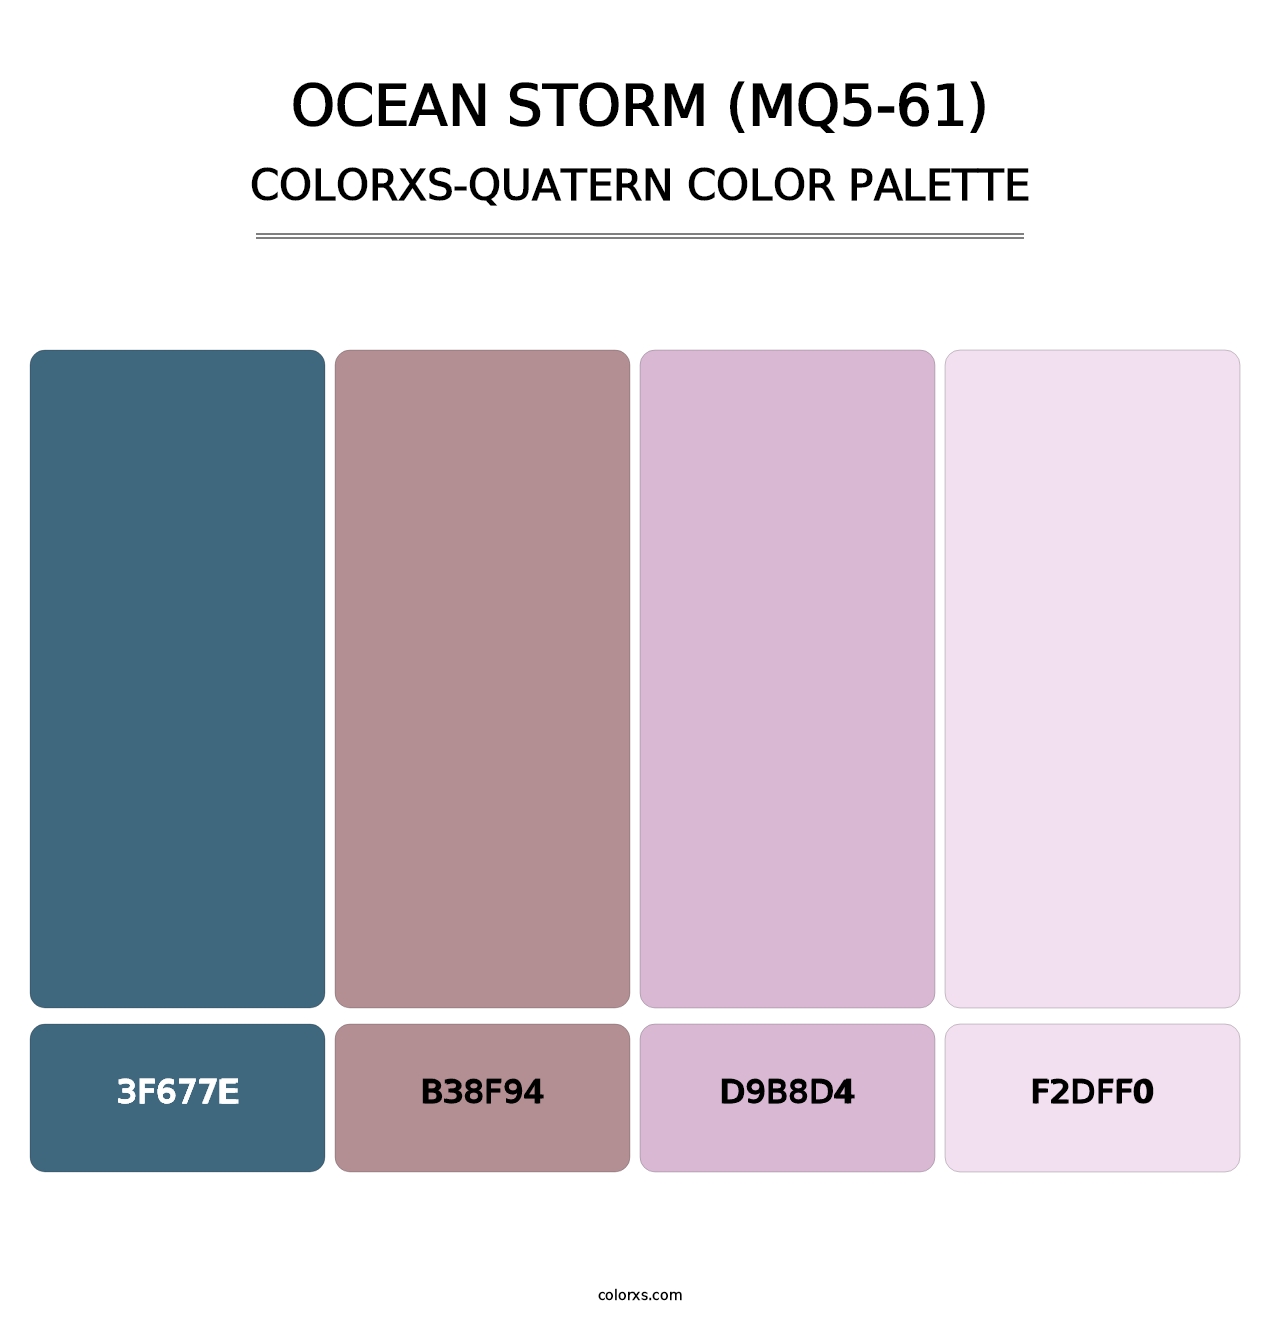 Ocean Storm (MQ5-61) - Colorxs Quatern Palette